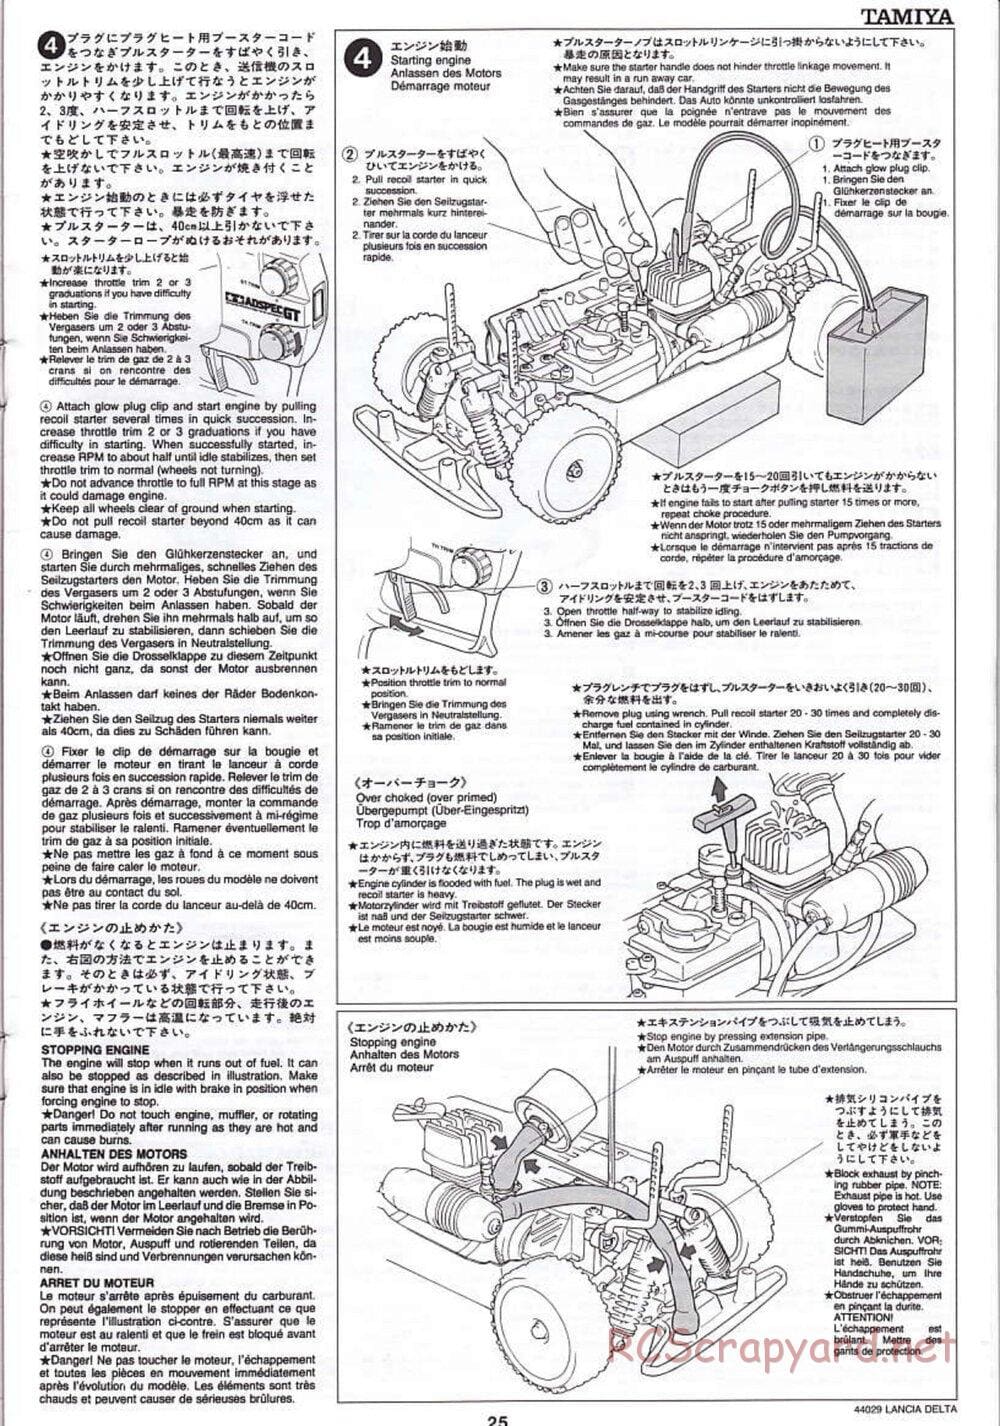 Tamiya - Lancia Delta HF Integrale - TG10 Mk.1 Chassis - Manual - Page 25